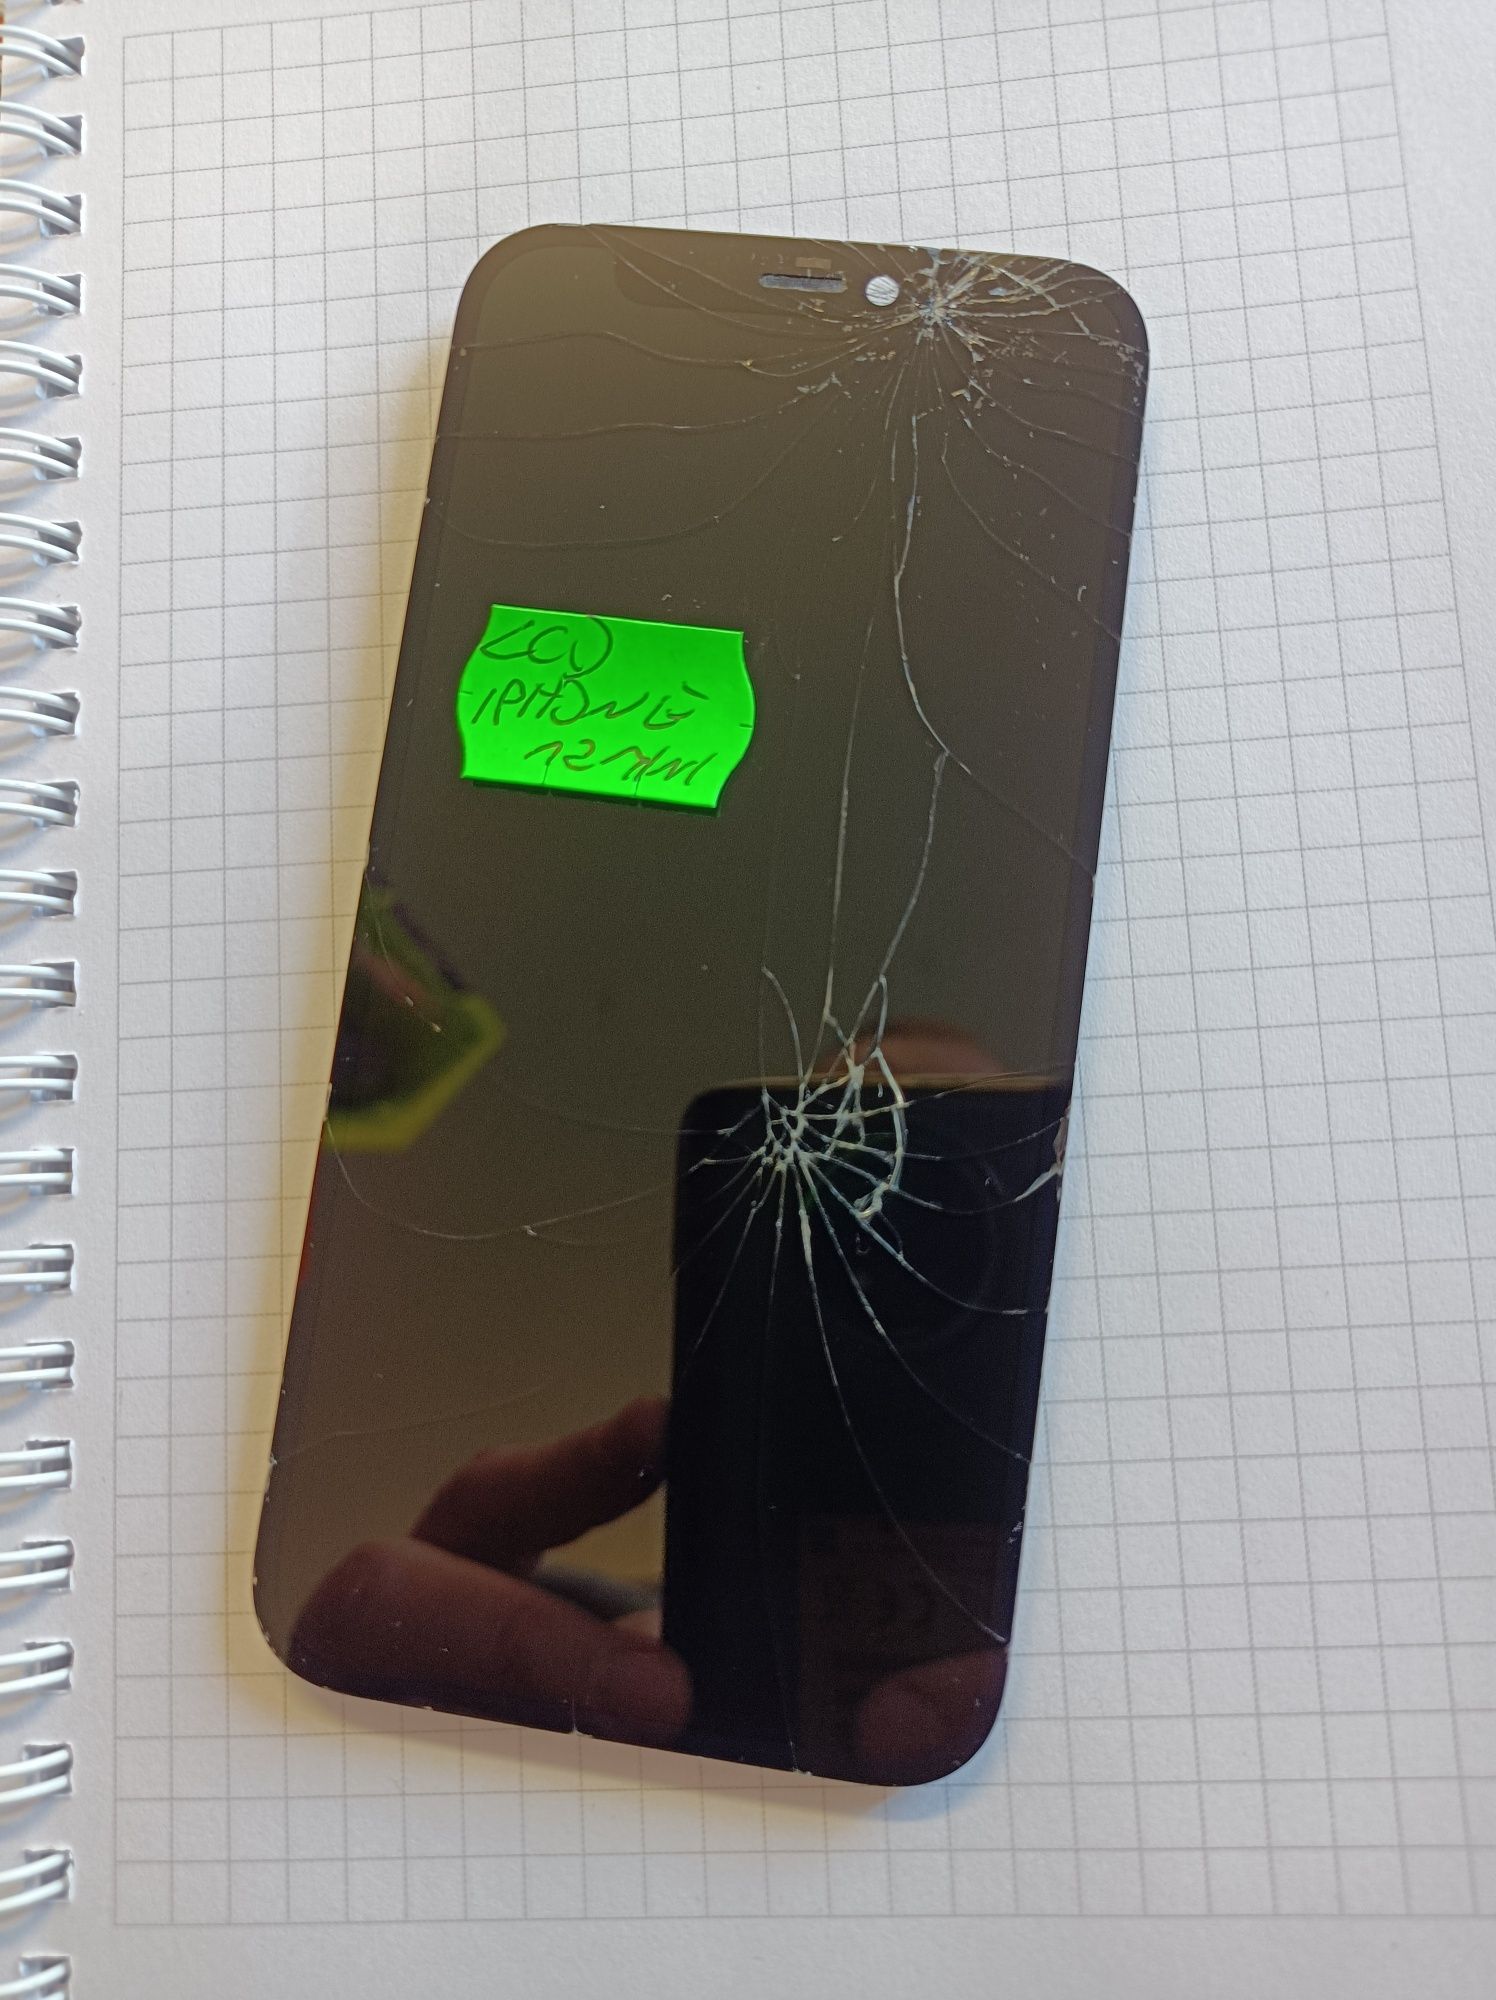 LCD iPhone 12 mini 100% oryginał pęknięte szkło, działający